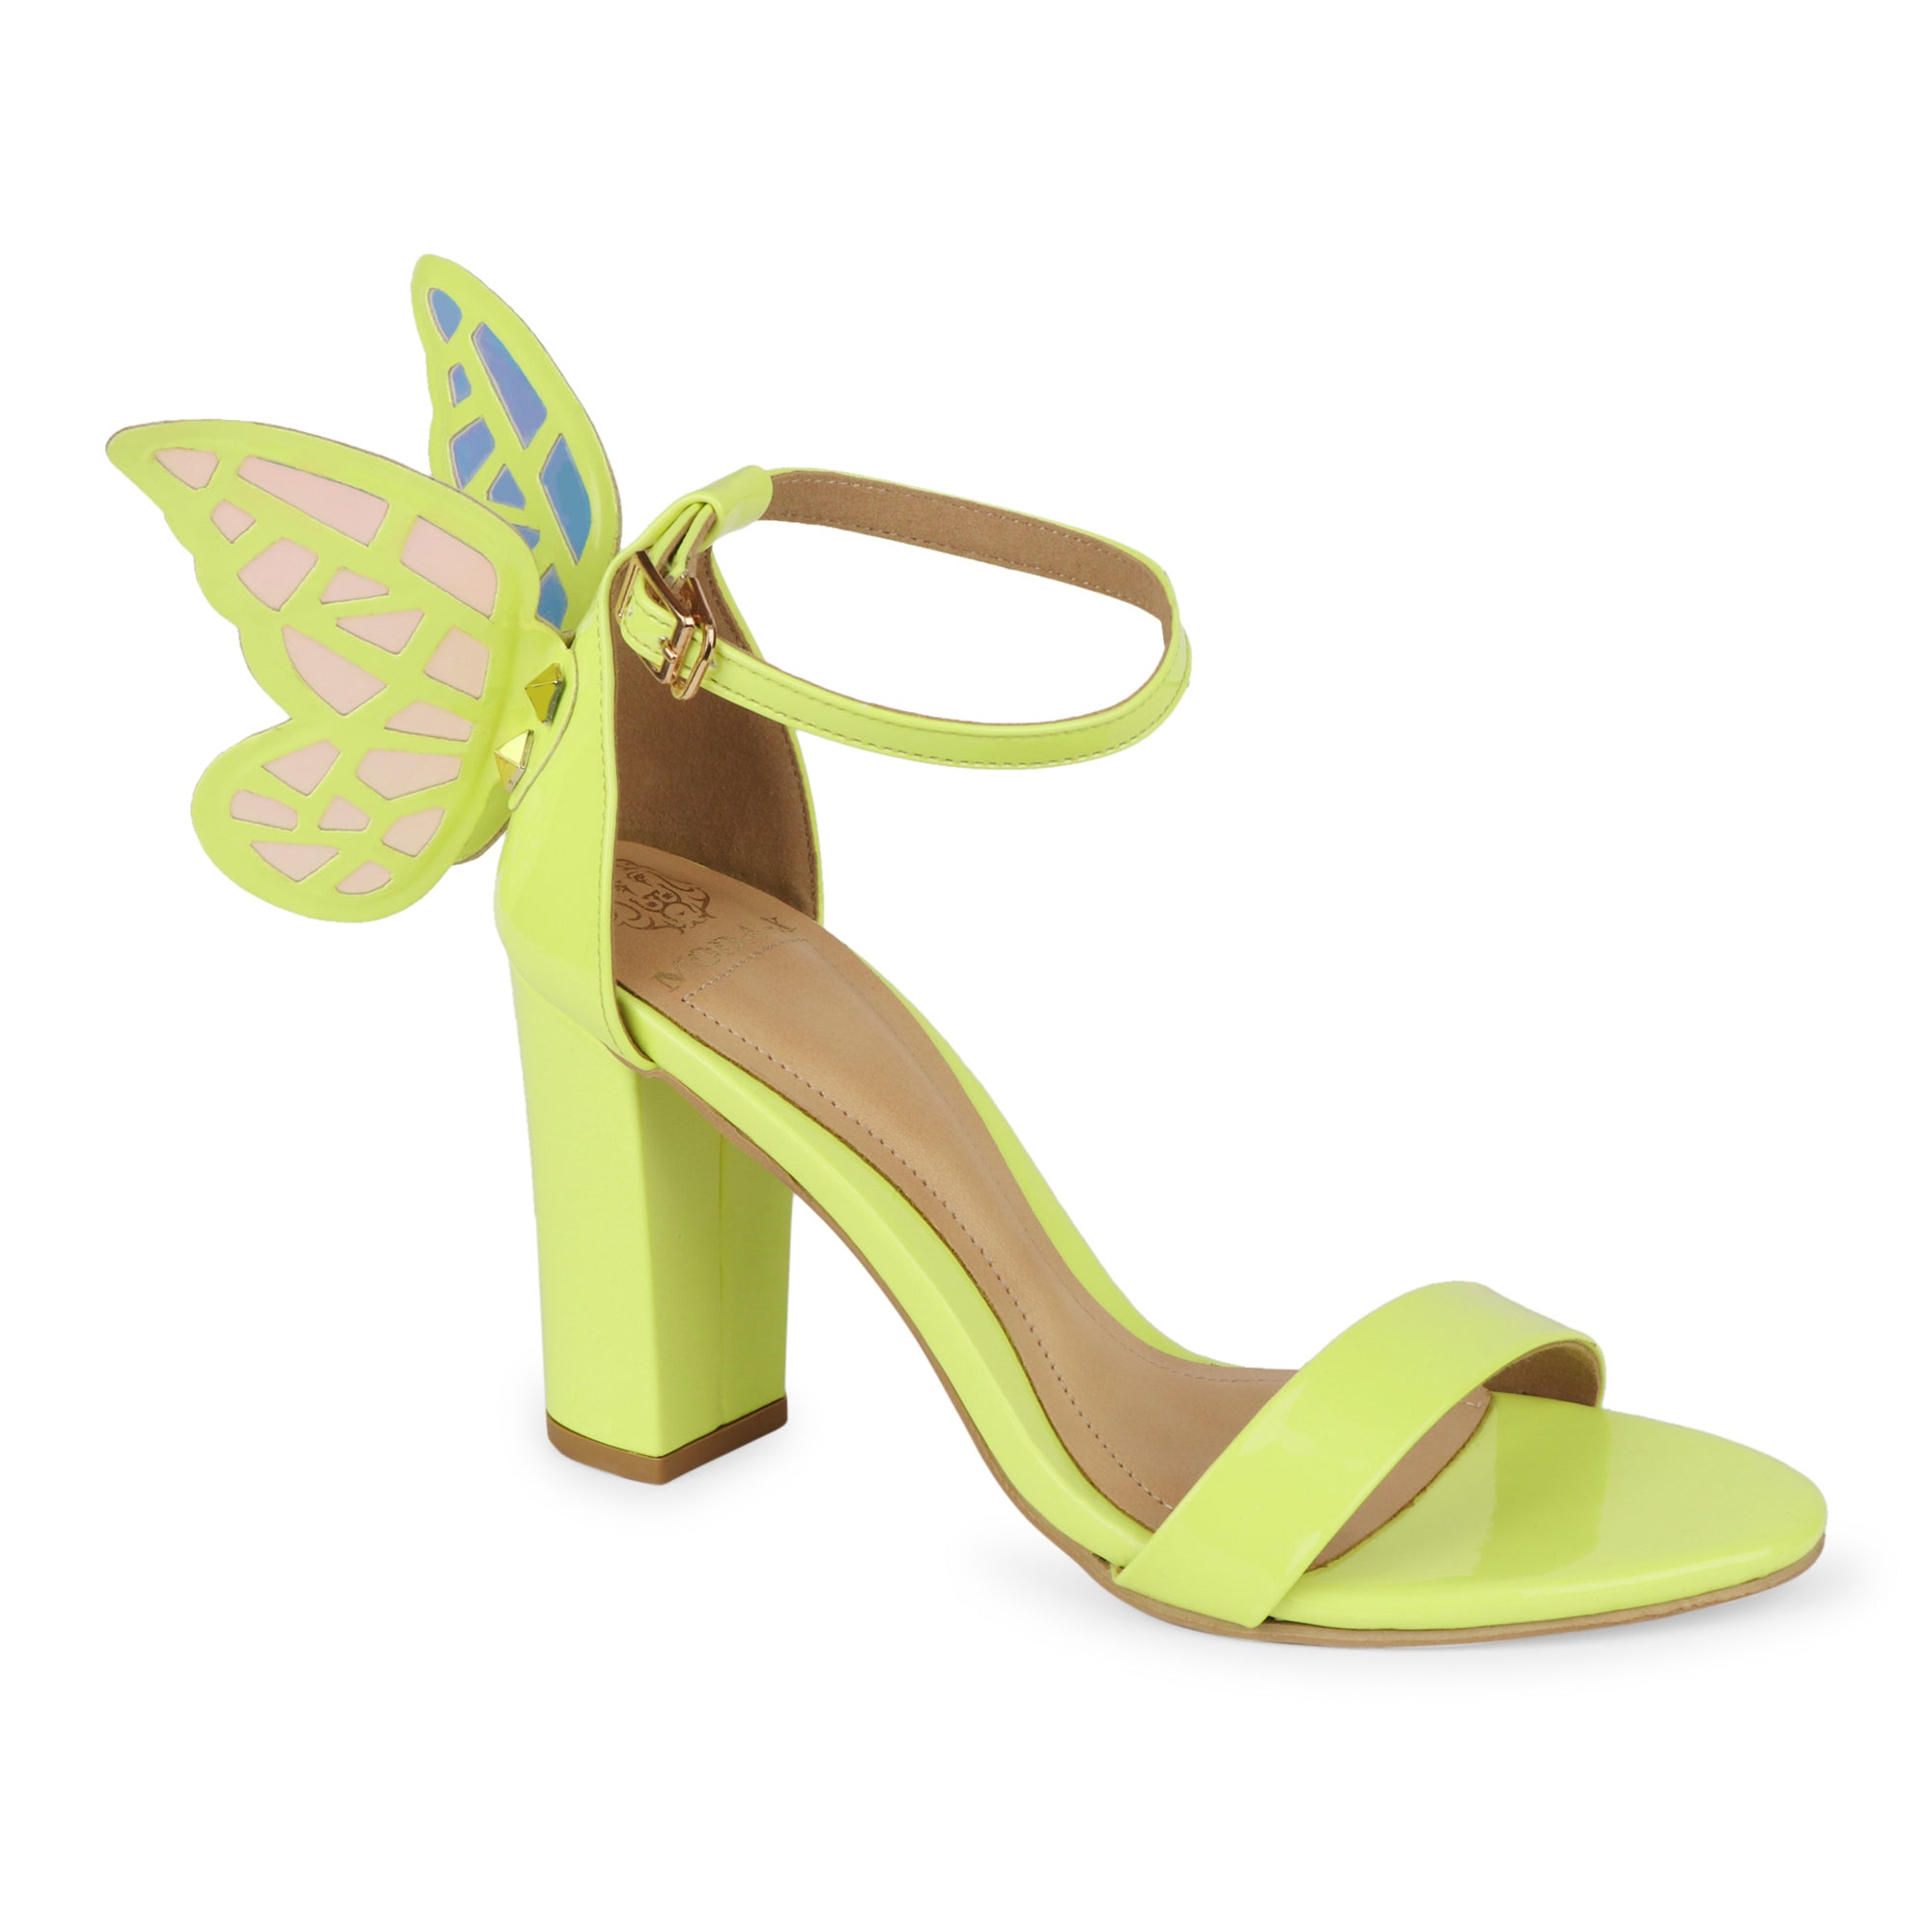 Pink Butterfly Heels - Lucite Heel Sandals - High Heel Sandals - Lulus